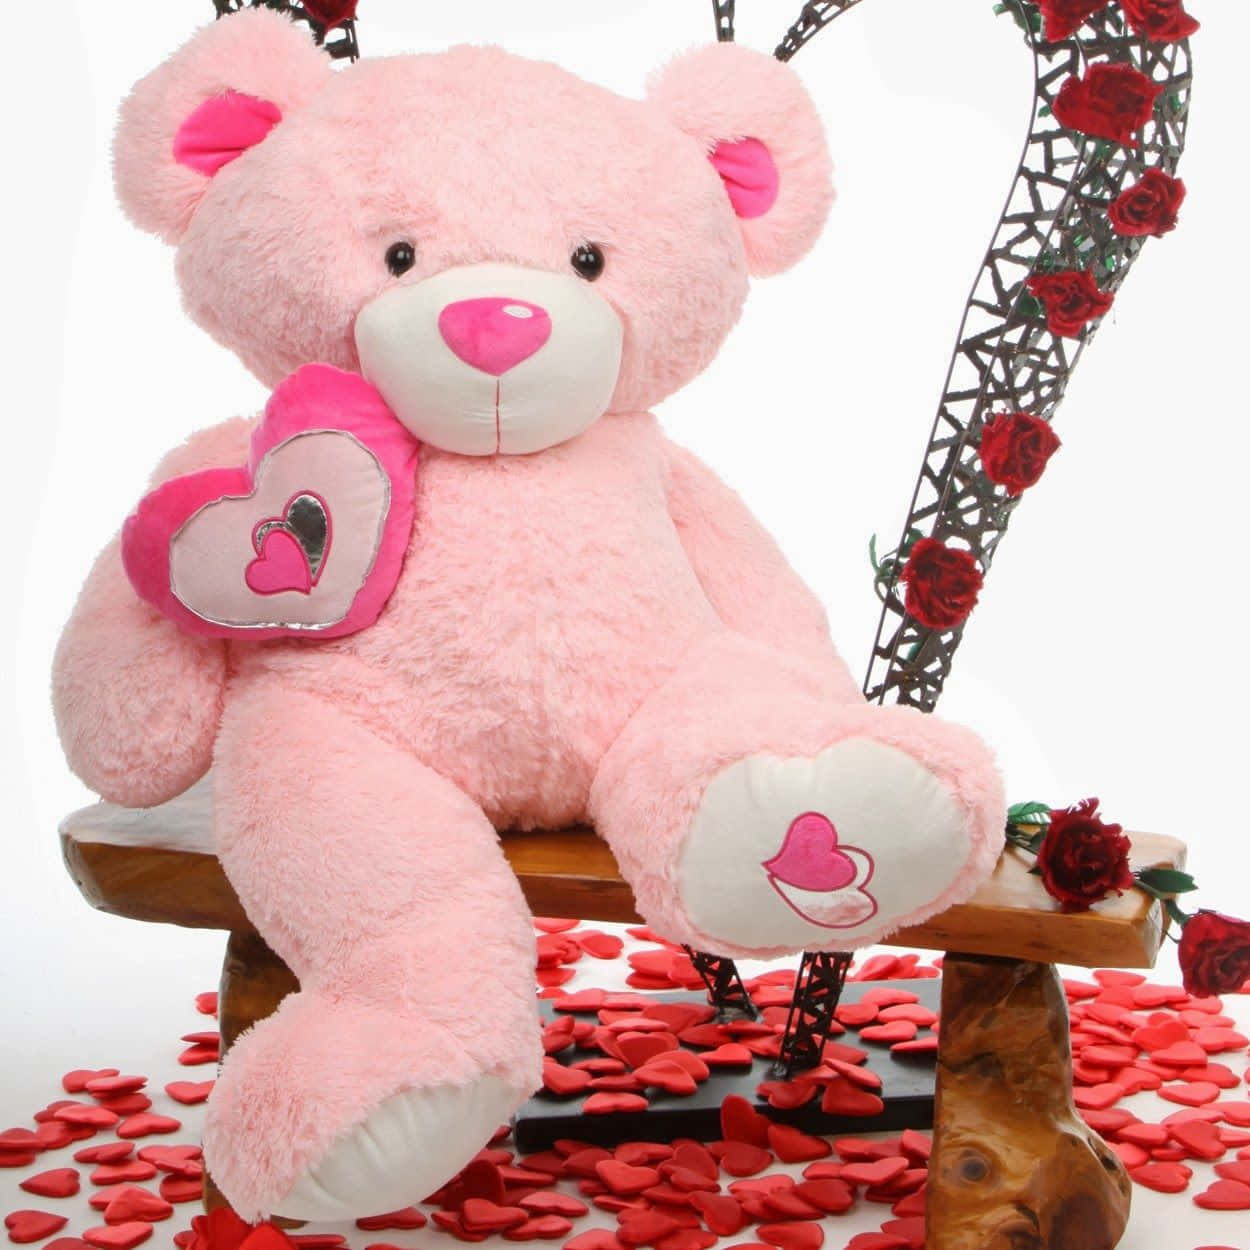 Cute Pink Teddy Bear Flowers Wallpaper